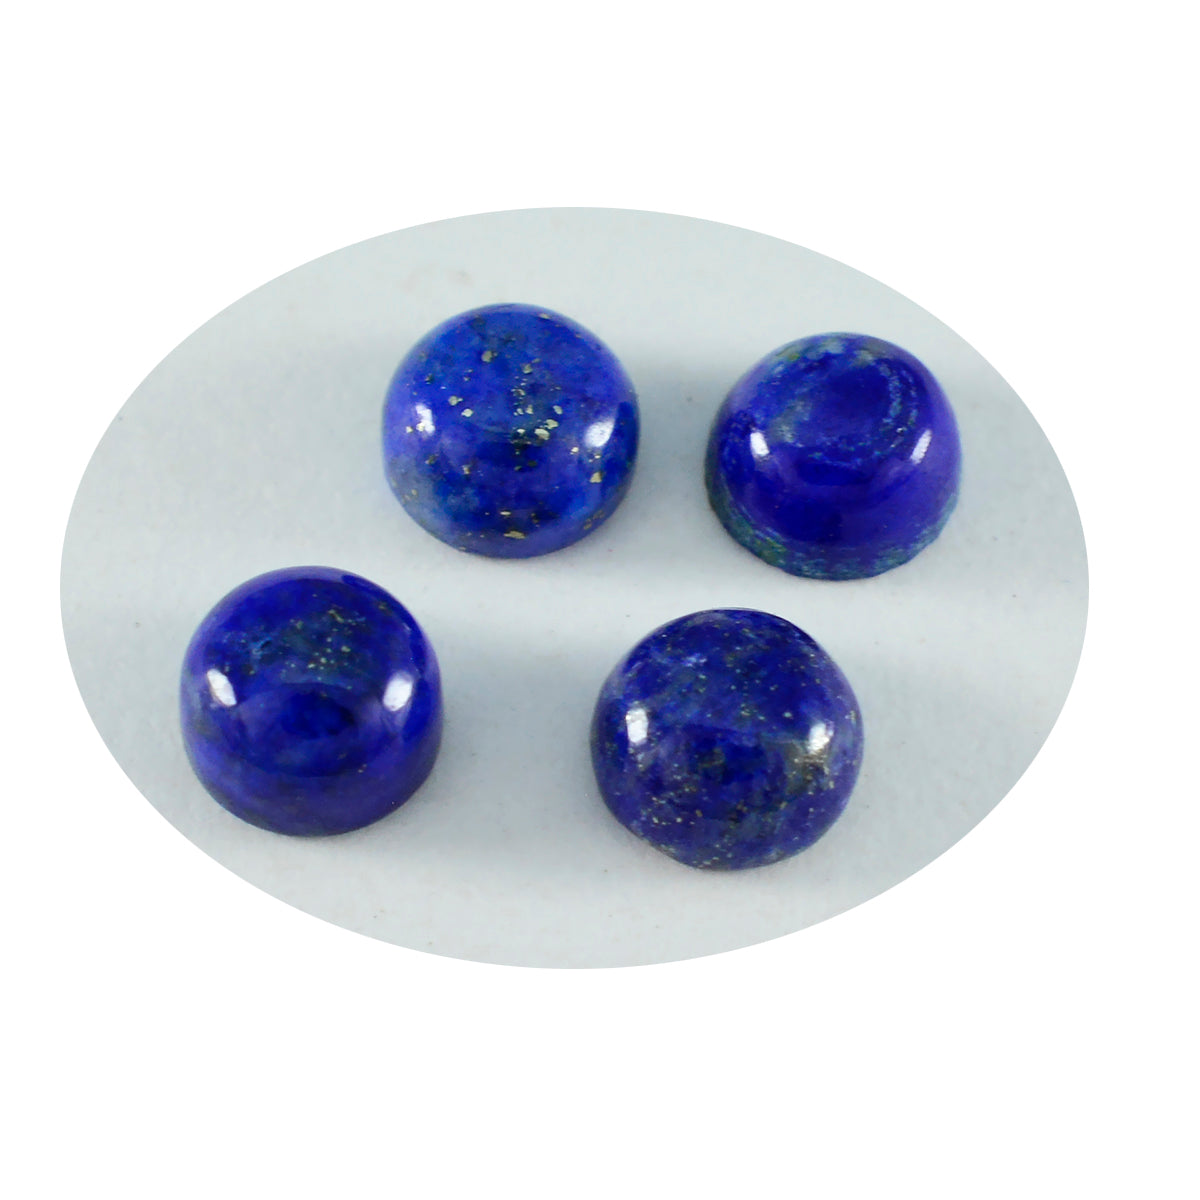 riyogems 1 st blå lapis lazuli cabochon 6x6 mm rund form snygga kvalitets lösa ädelstenar